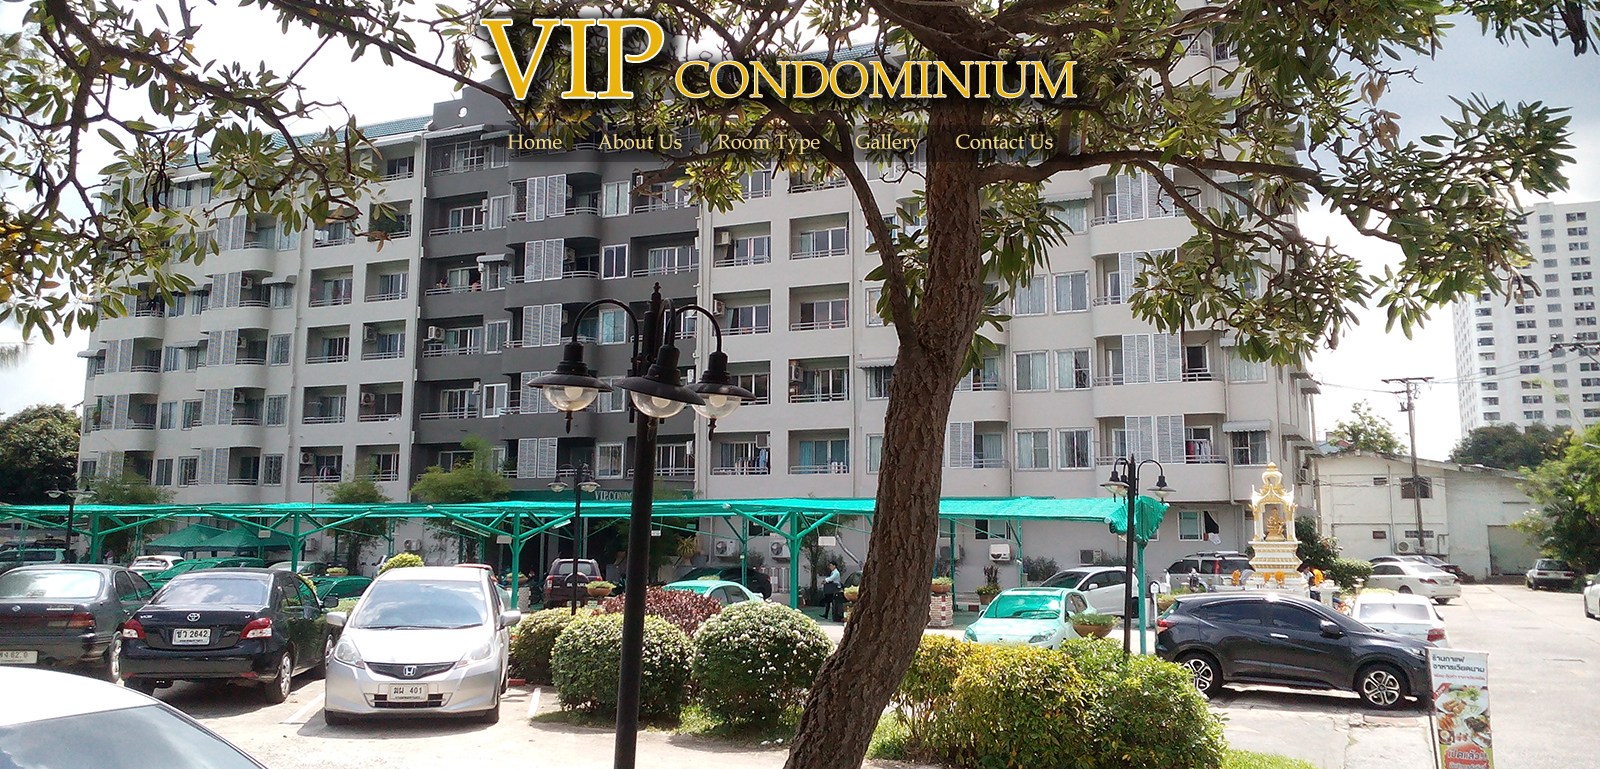 VIP Condominium